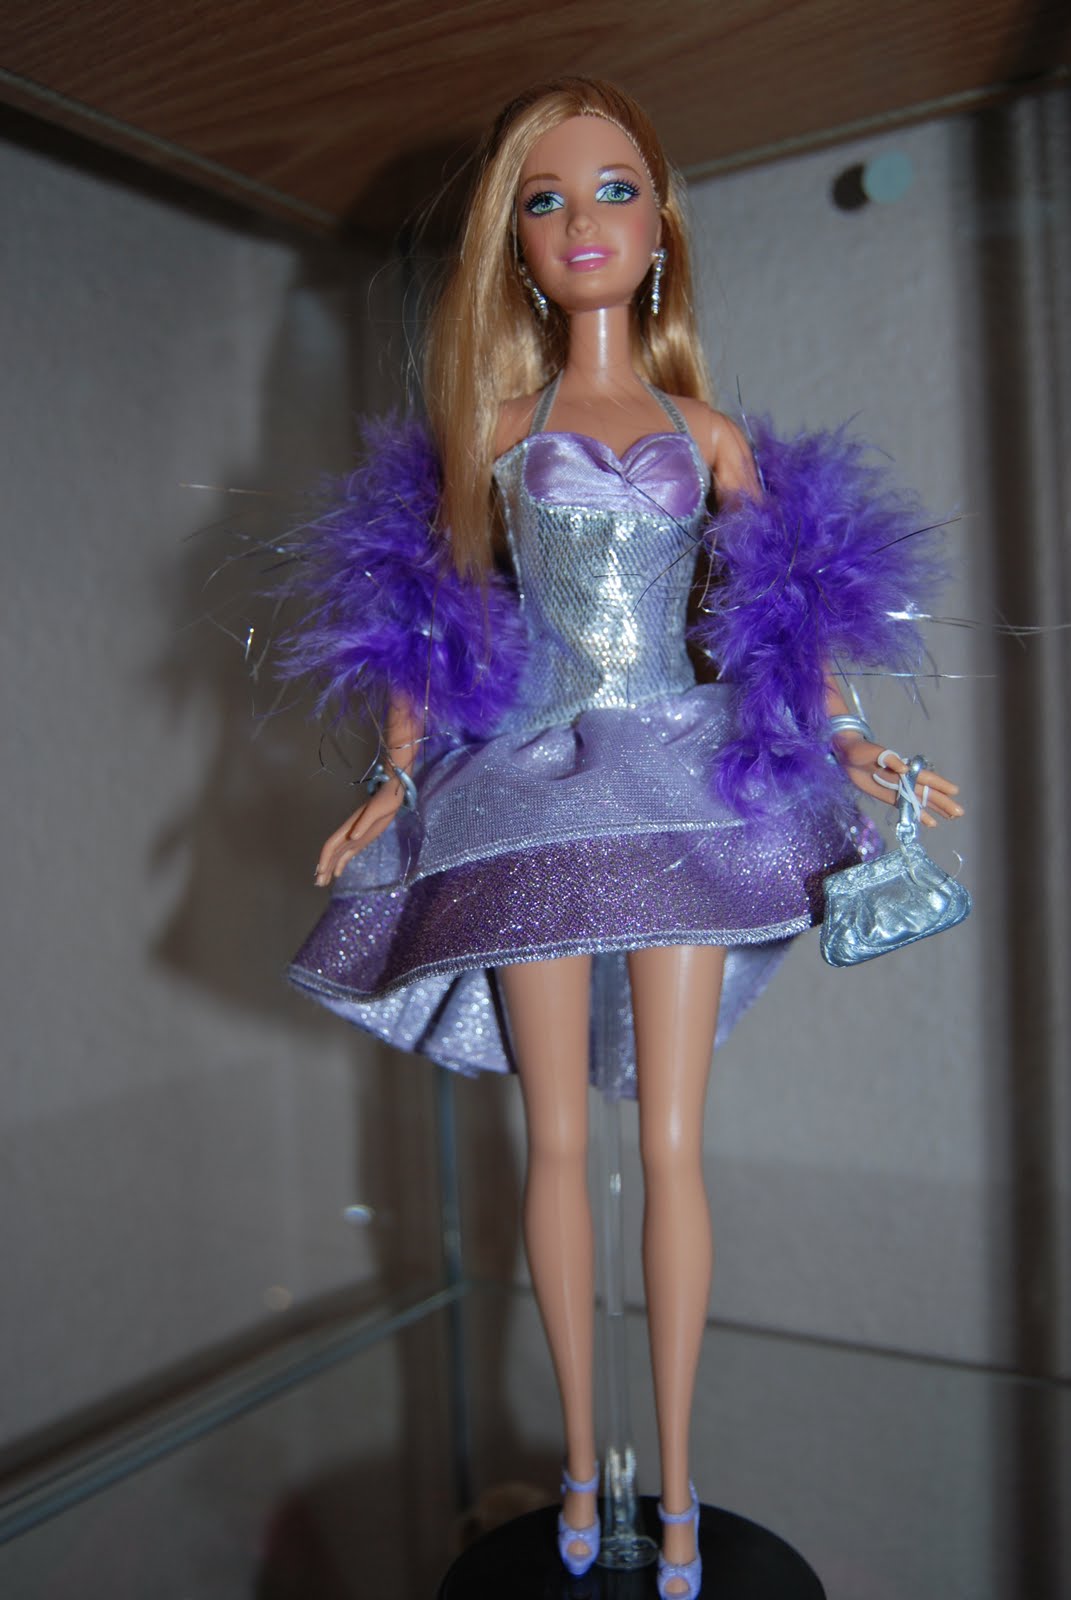 El mundo de Barbie Barbie Fashion Fever "Summer"